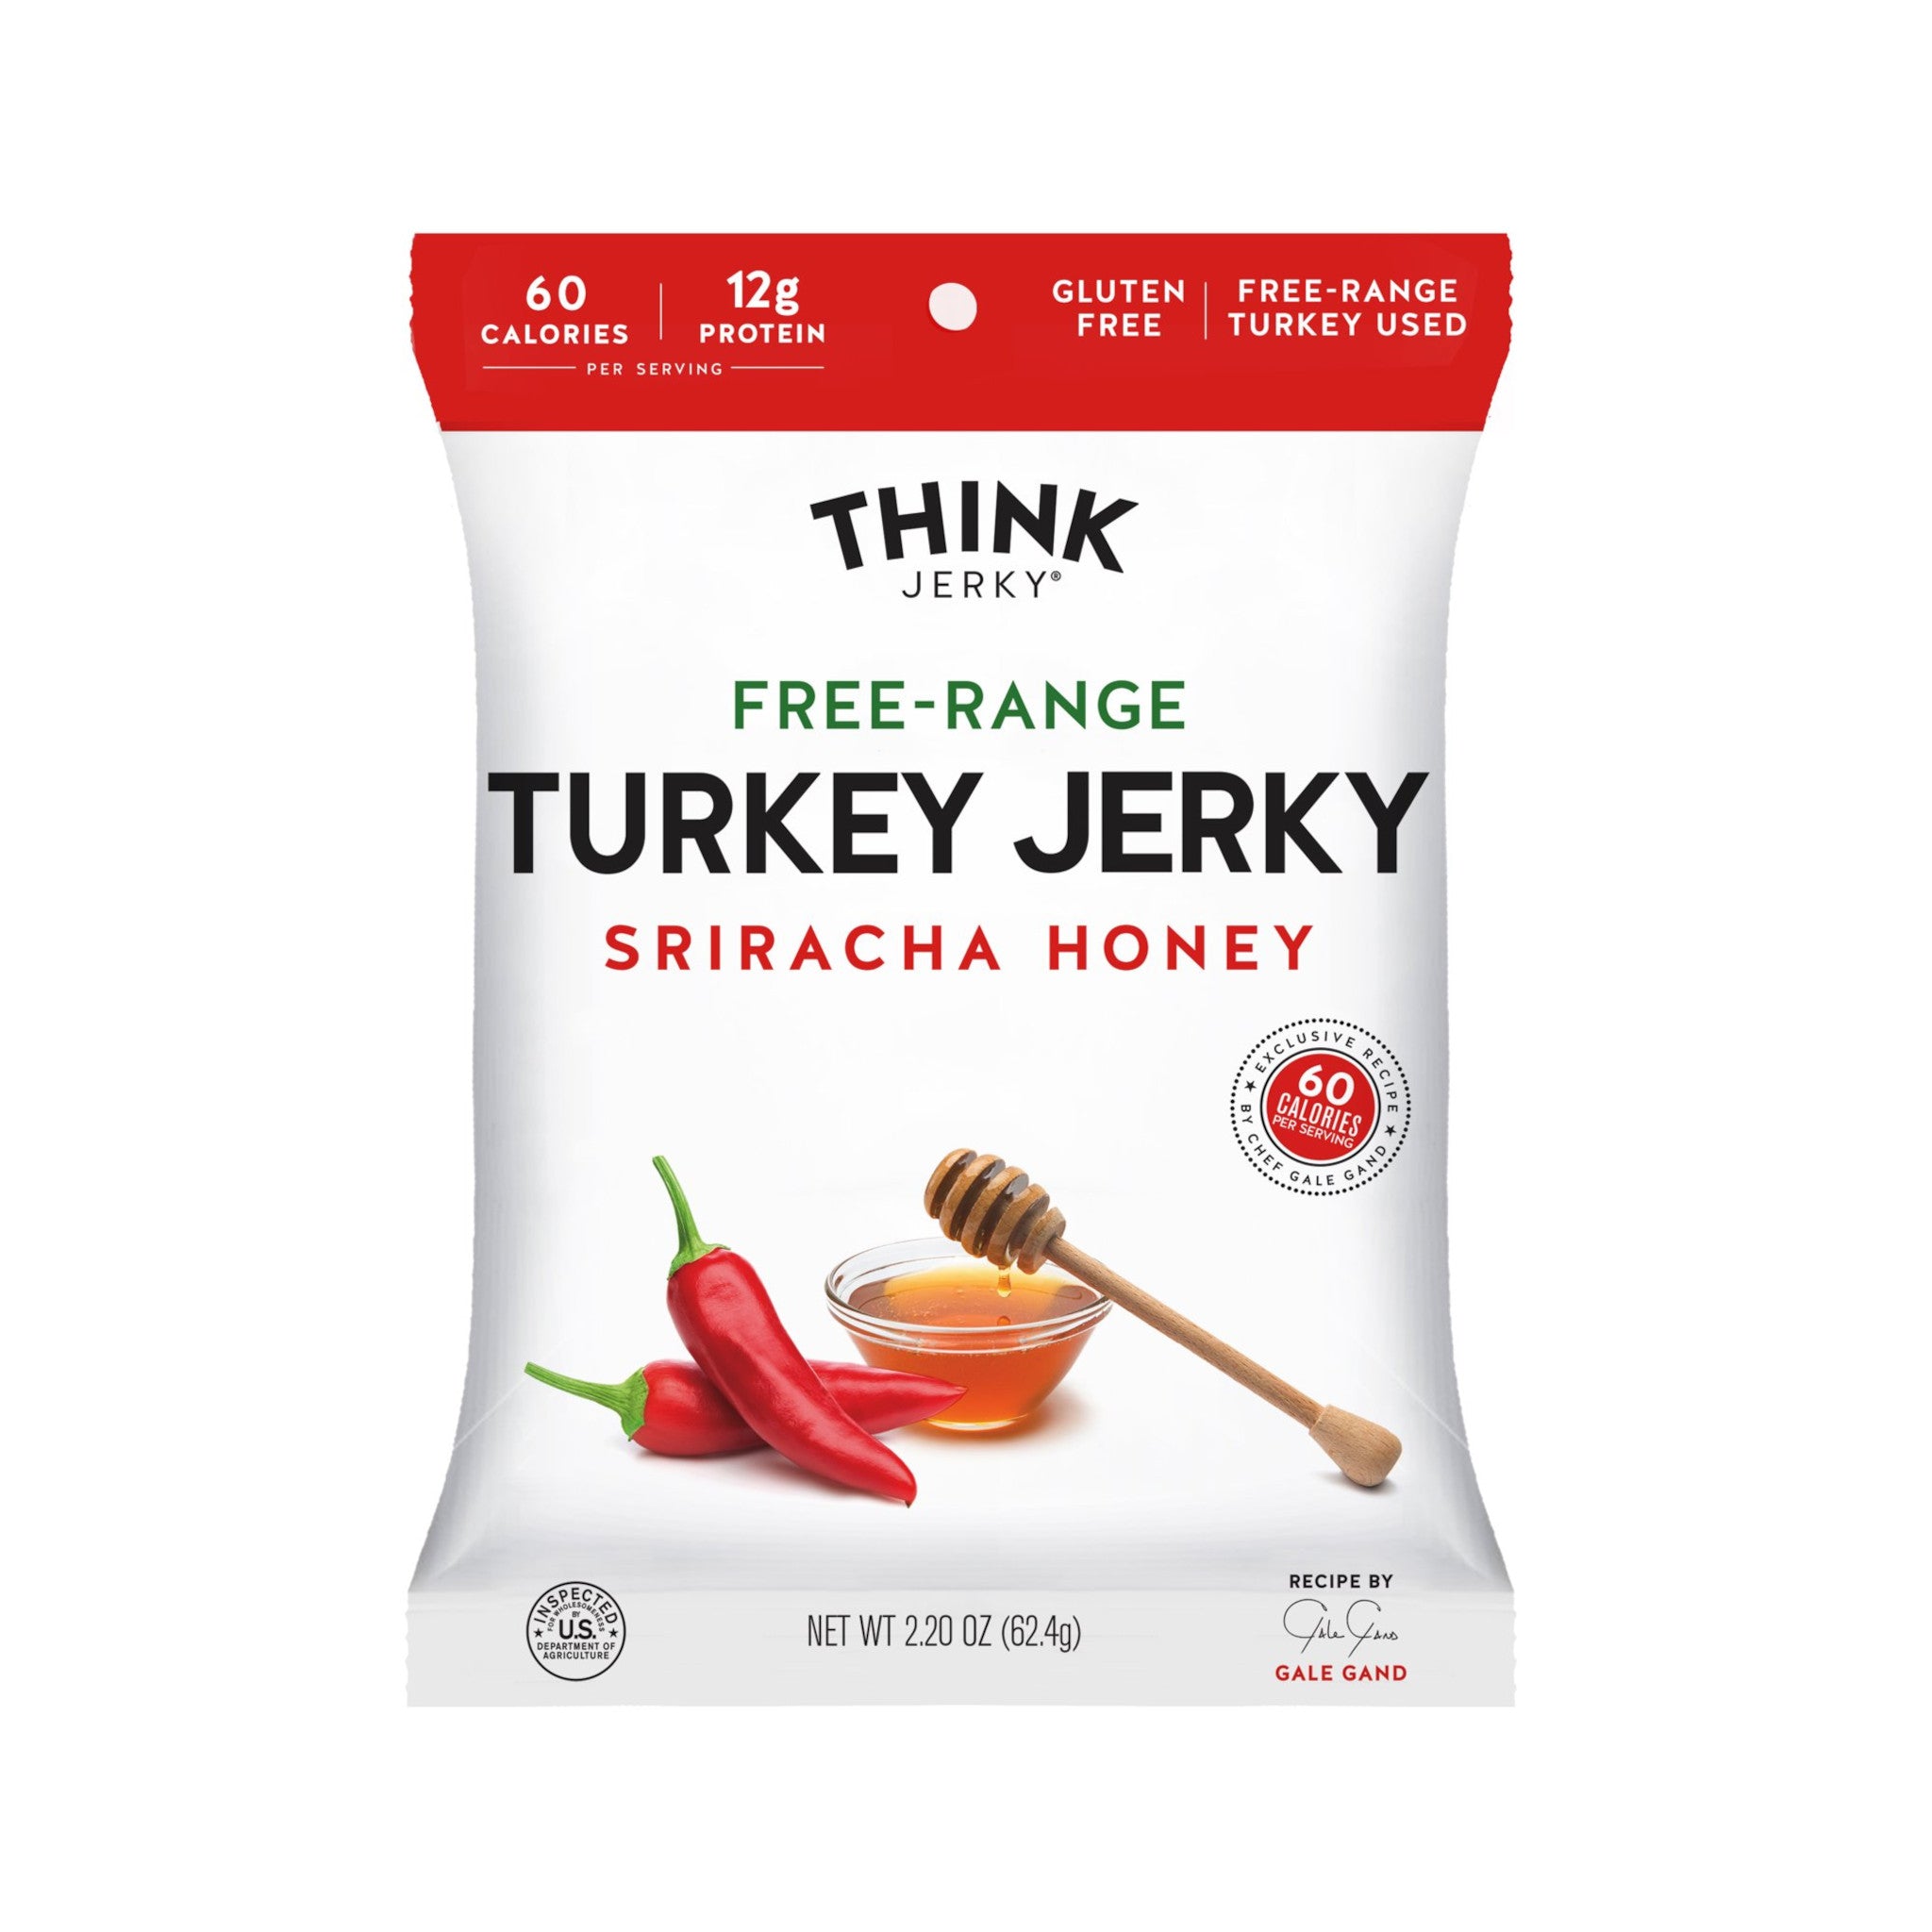 Sriracha Honey Turkey Jerky